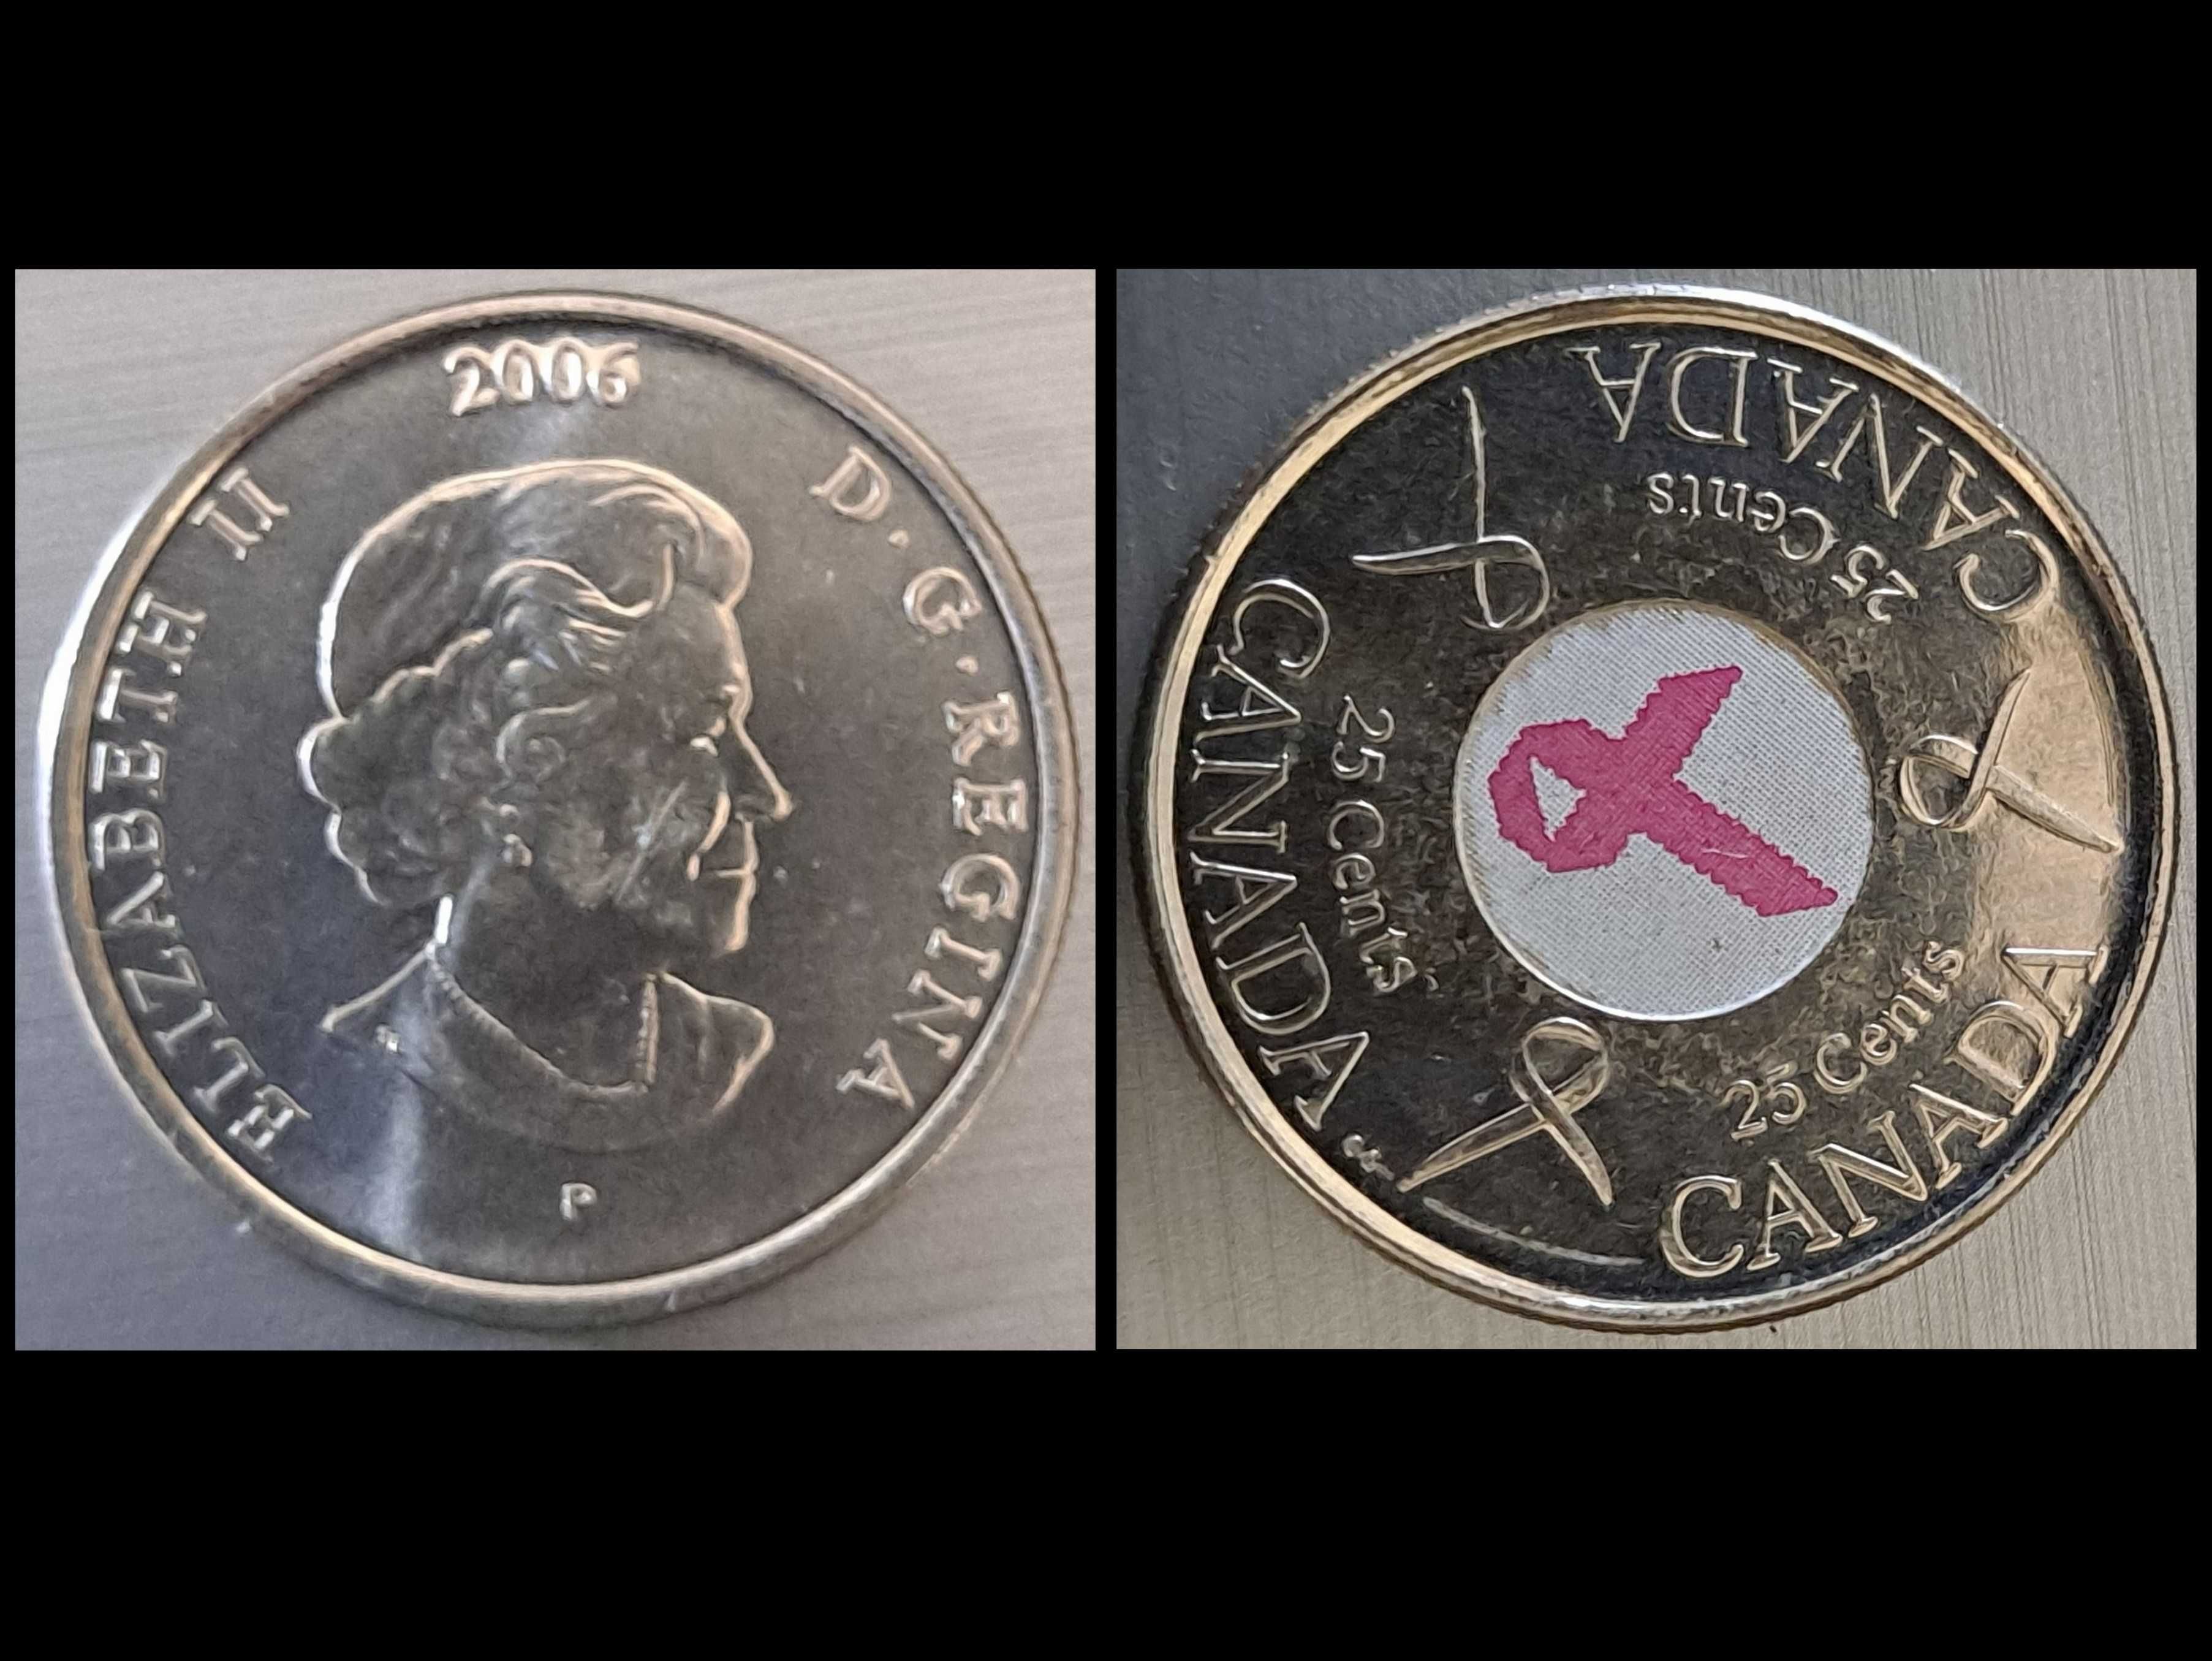 moneta - 25 centów - Kanada - stop: stal pokryta niklem - 2006 r.